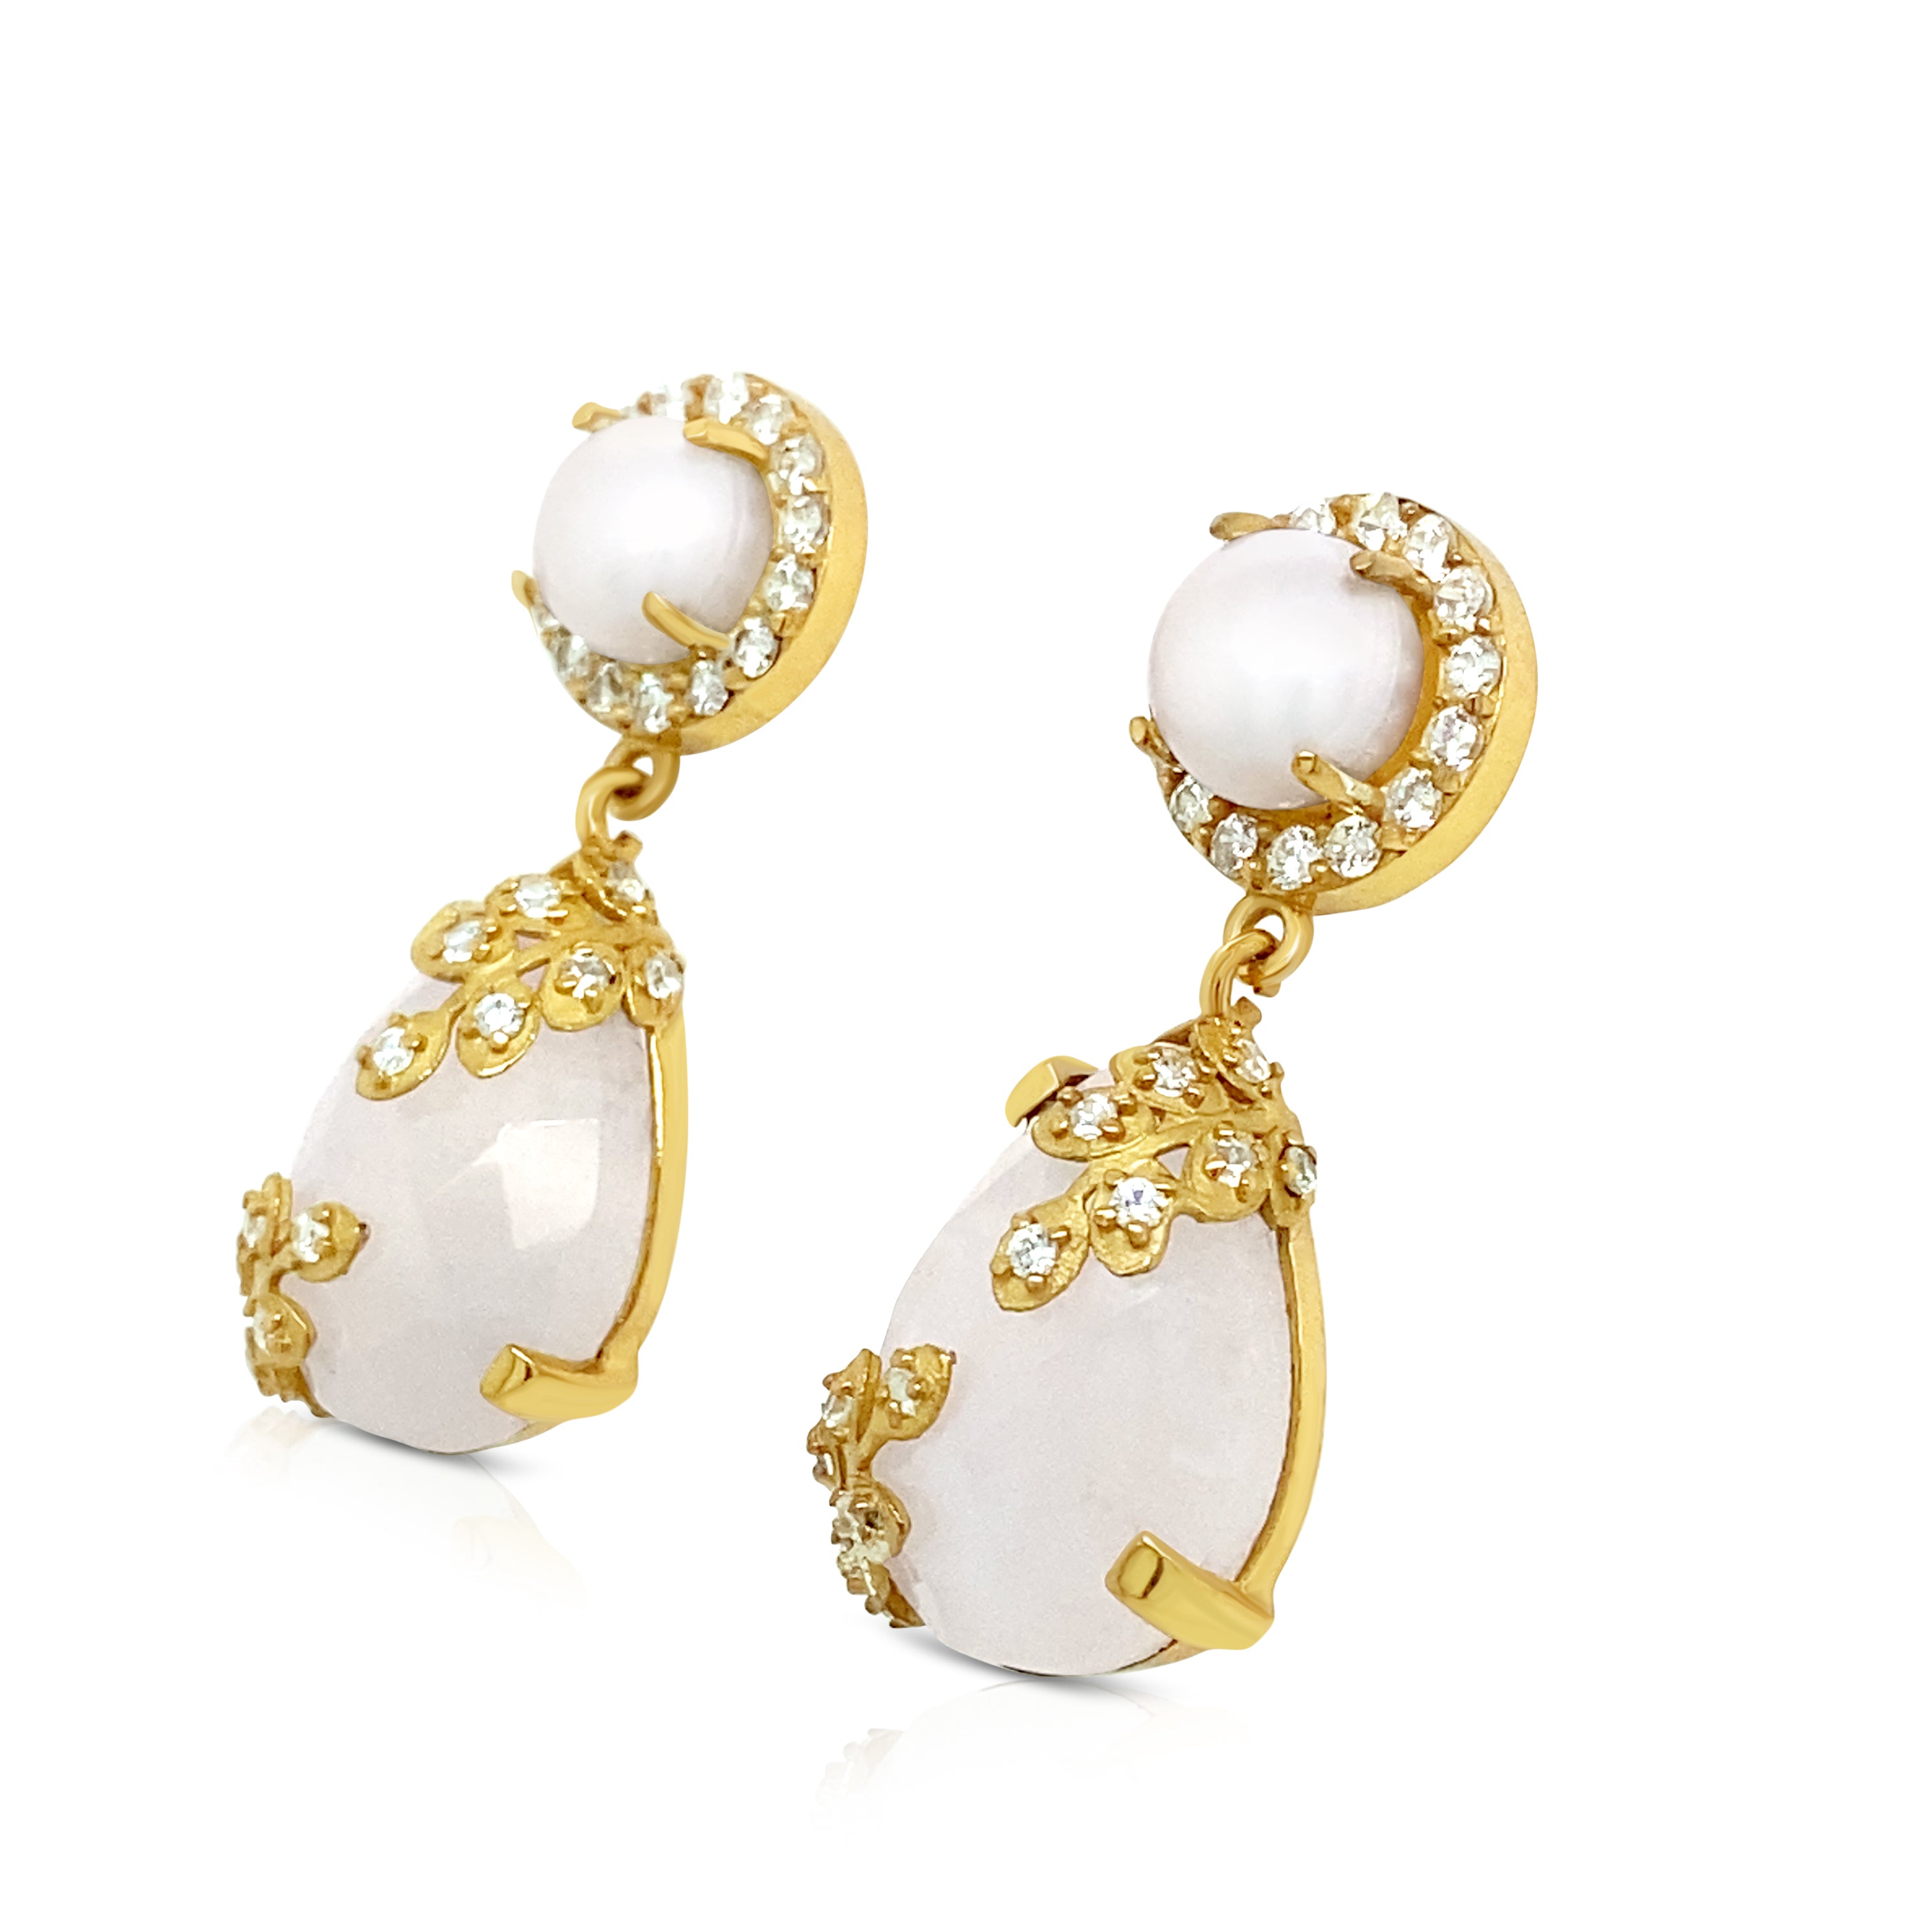 White Lace earrings